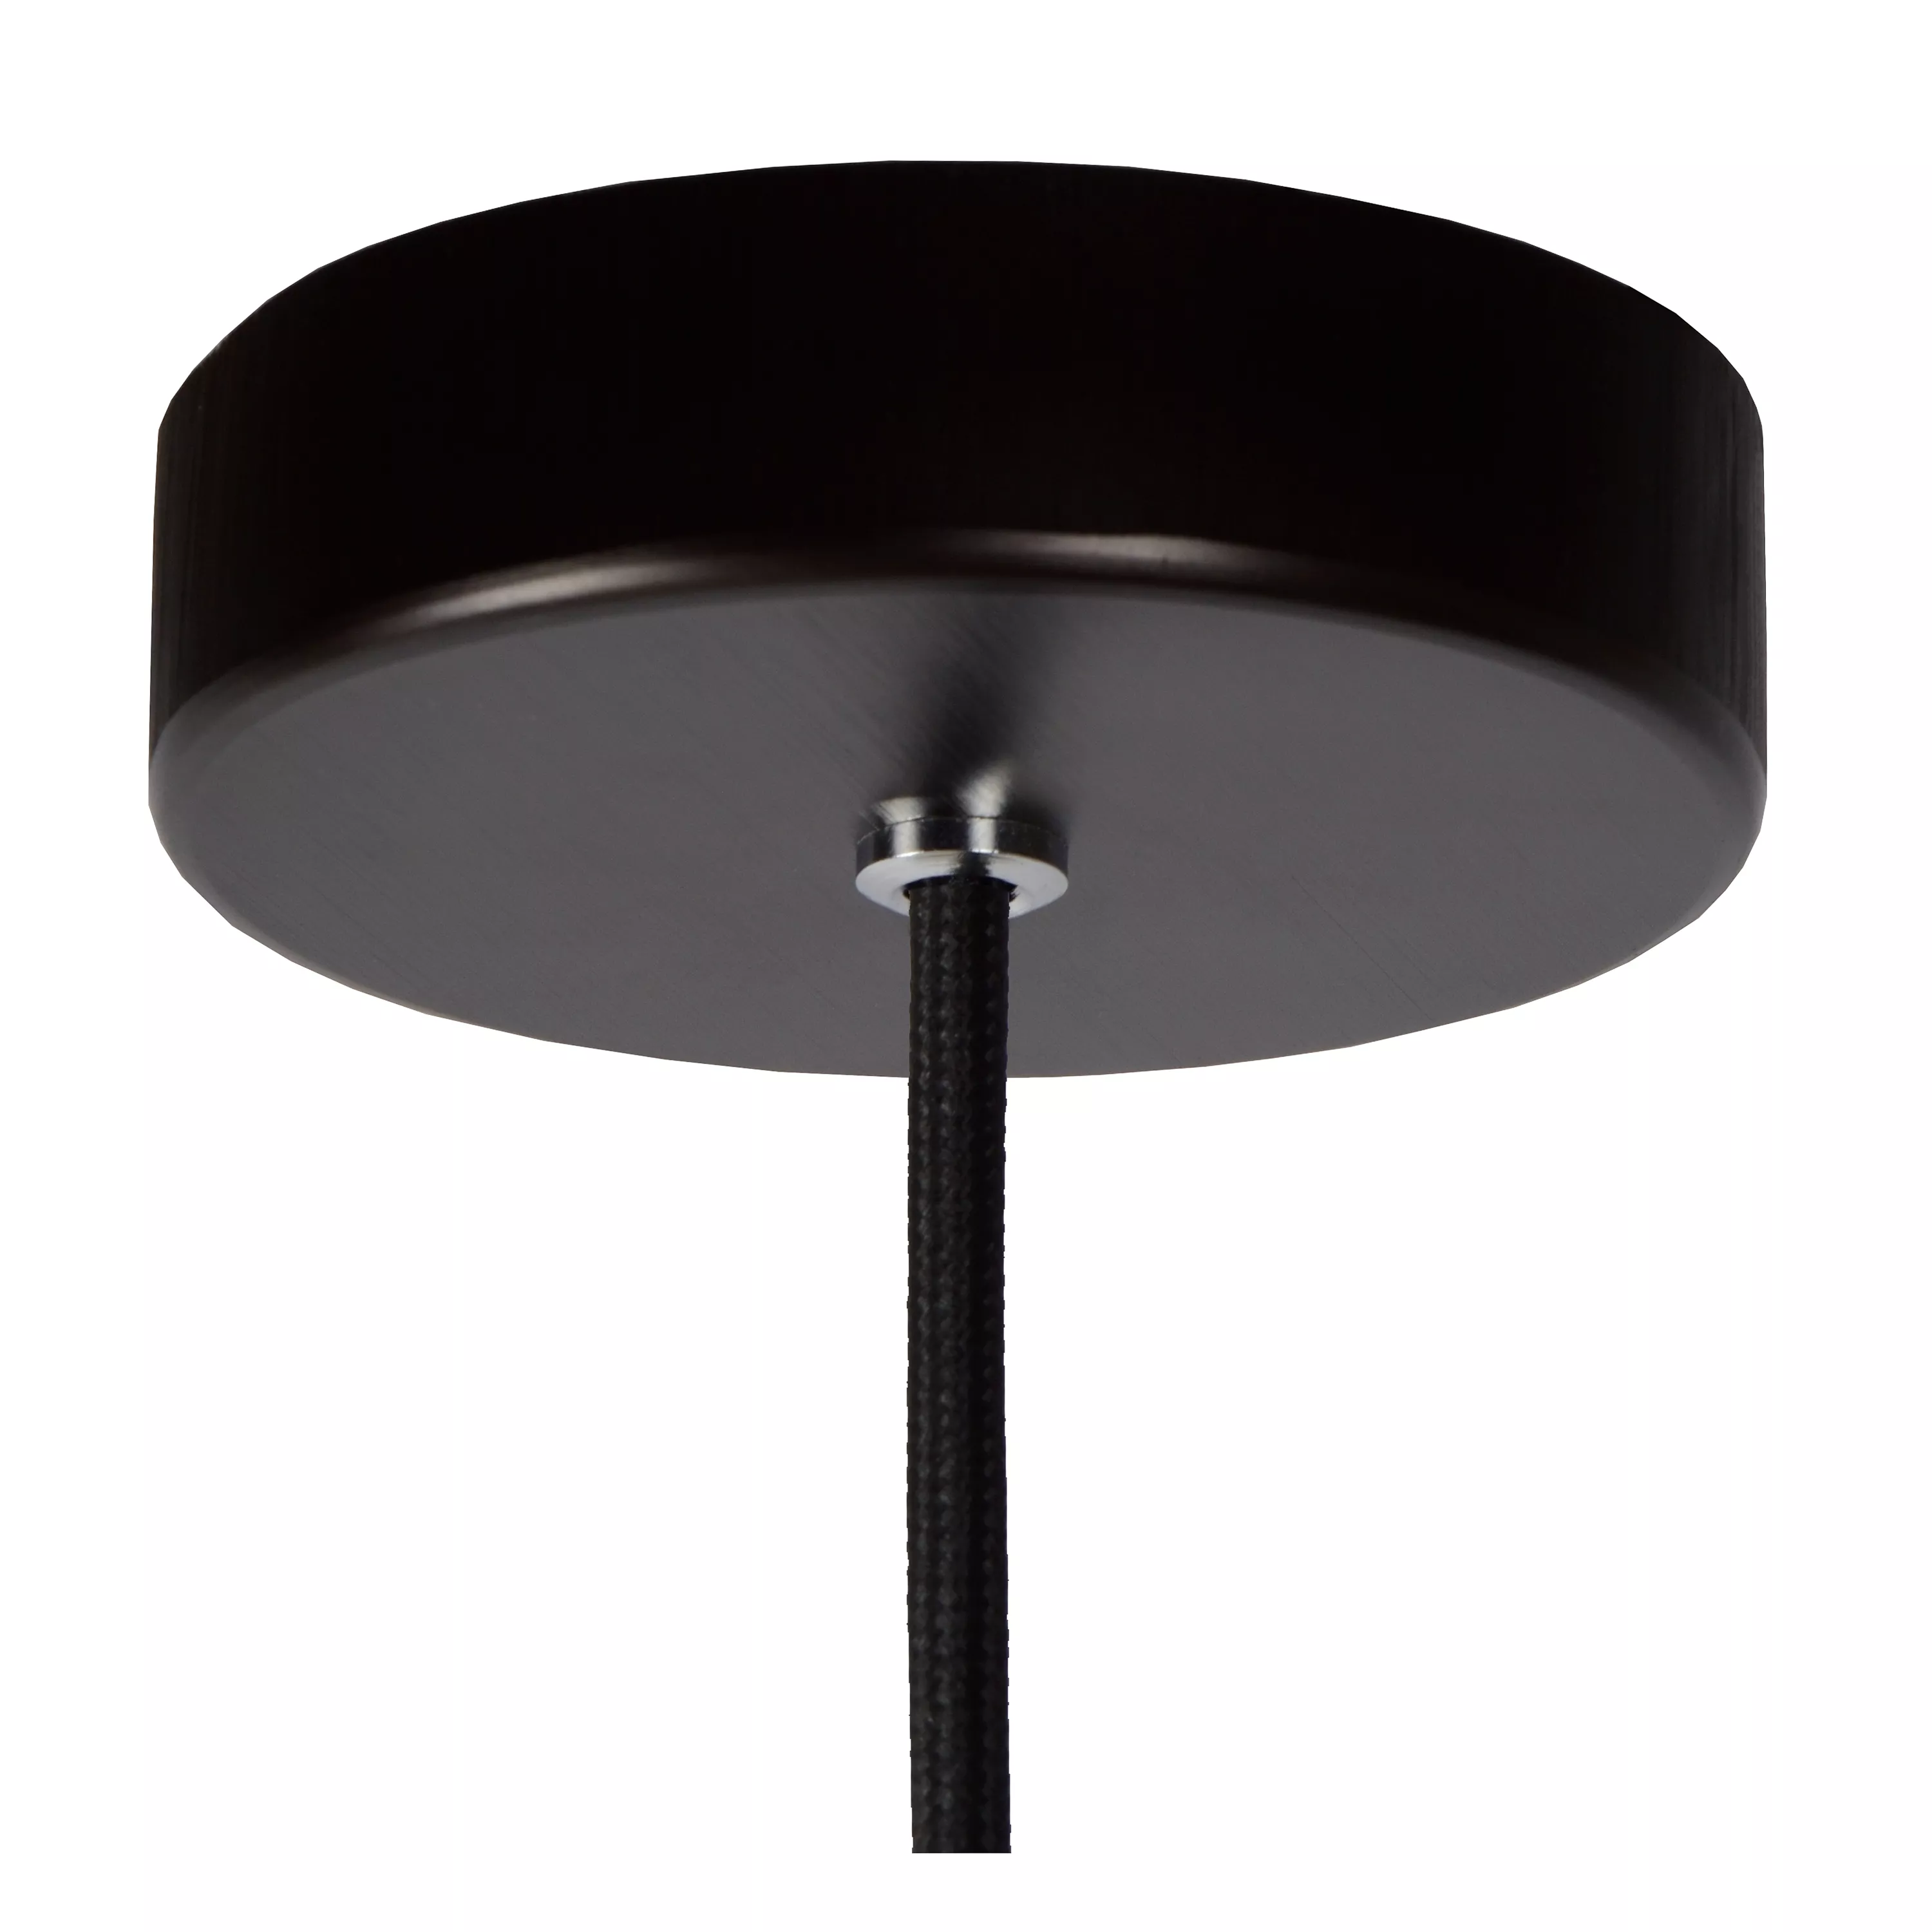 Jednoduché závesné svietidlo Zino s pútavým dizajnom v čiernom vyhotovení s dymovým sklom. Doplňte o dekoratívnu žiarovku.